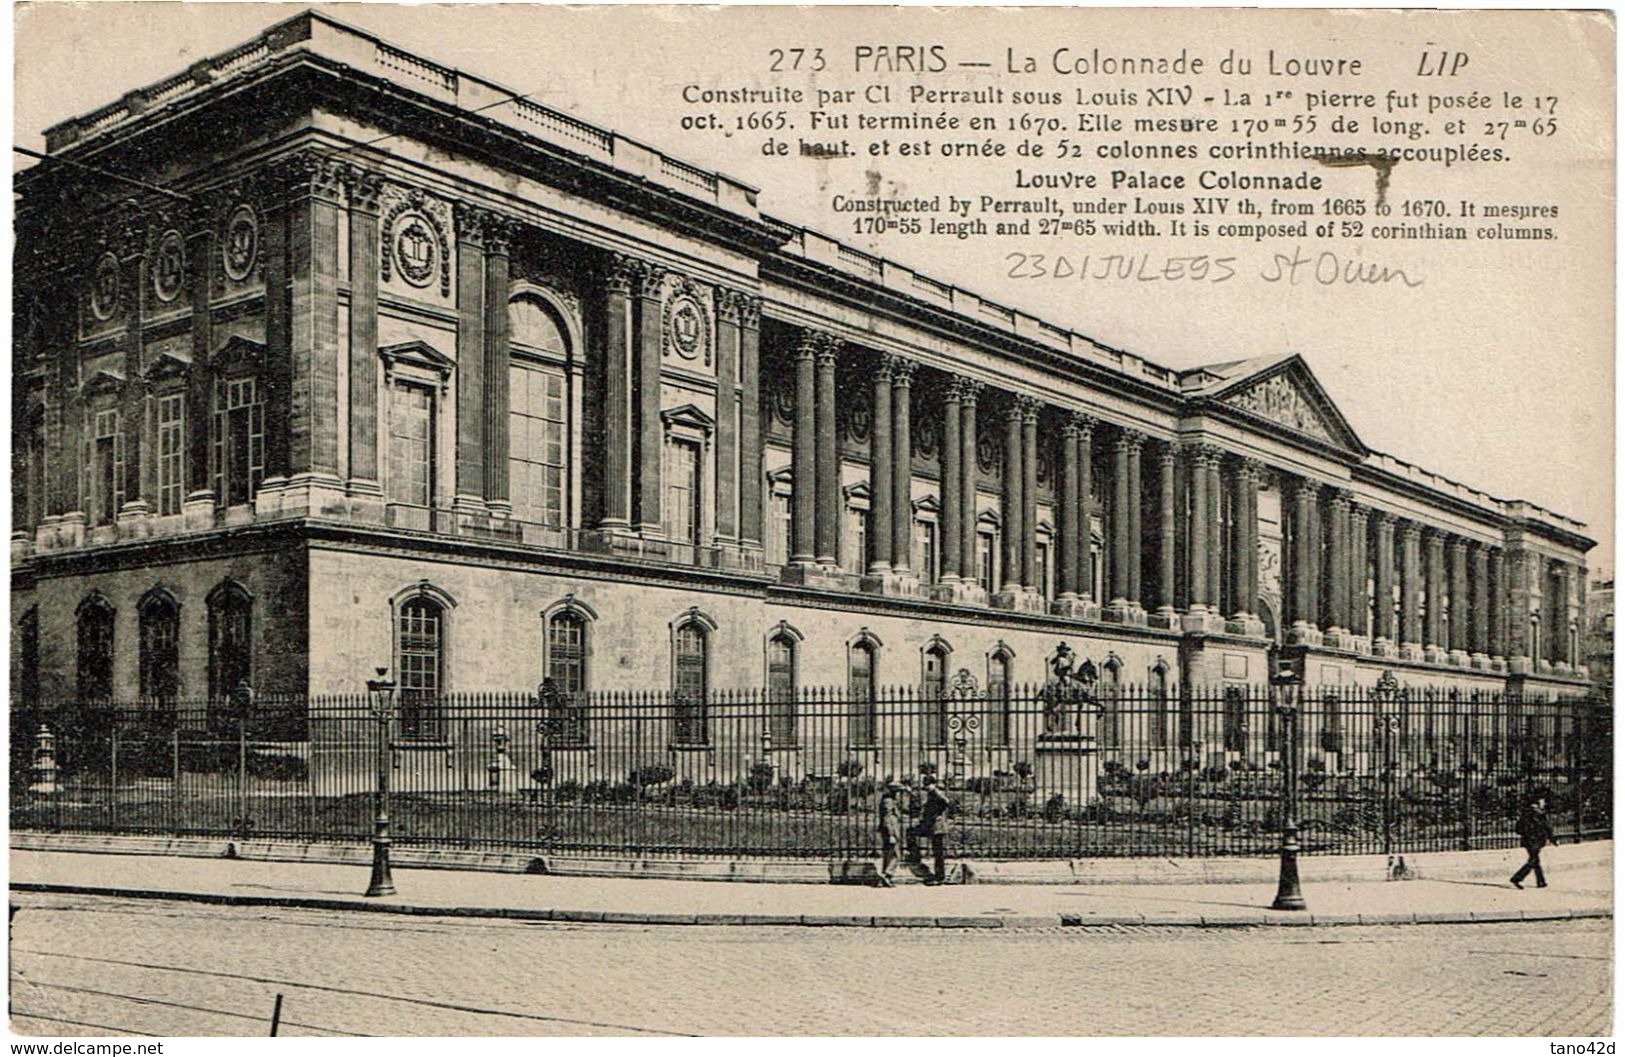 PP13/3 - CPA DES GRANDS MAGASINS DU LOUVRE CIRCULEE 26/1/1924 - PARIS LA COLONNADE DU LOUVRE FLAMME J.O.PARIS 1924 - Publicité